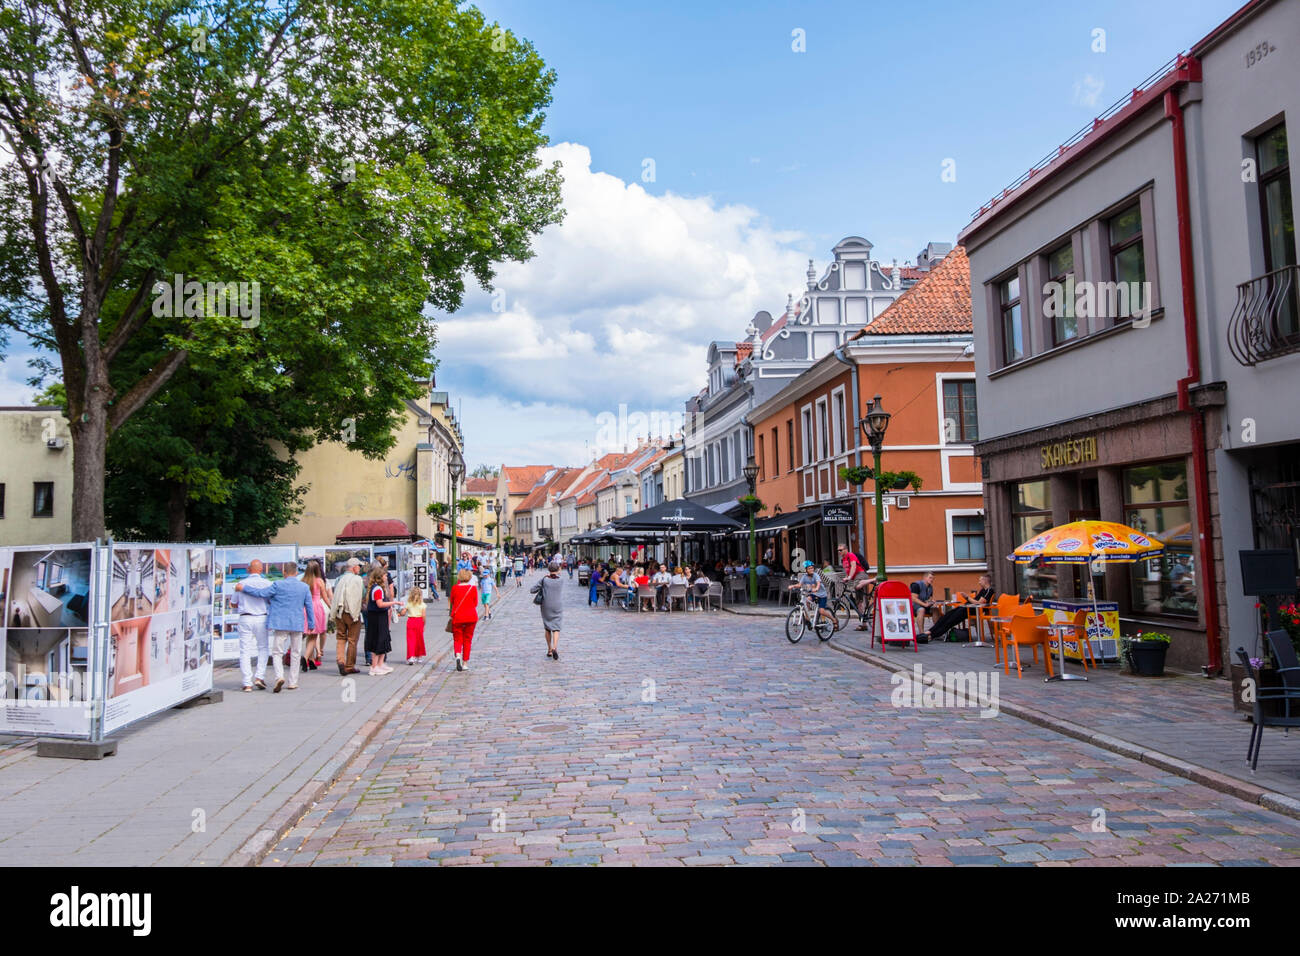 Vilniaus gatve, old town, Kaunas, Lithuania Stock Photo